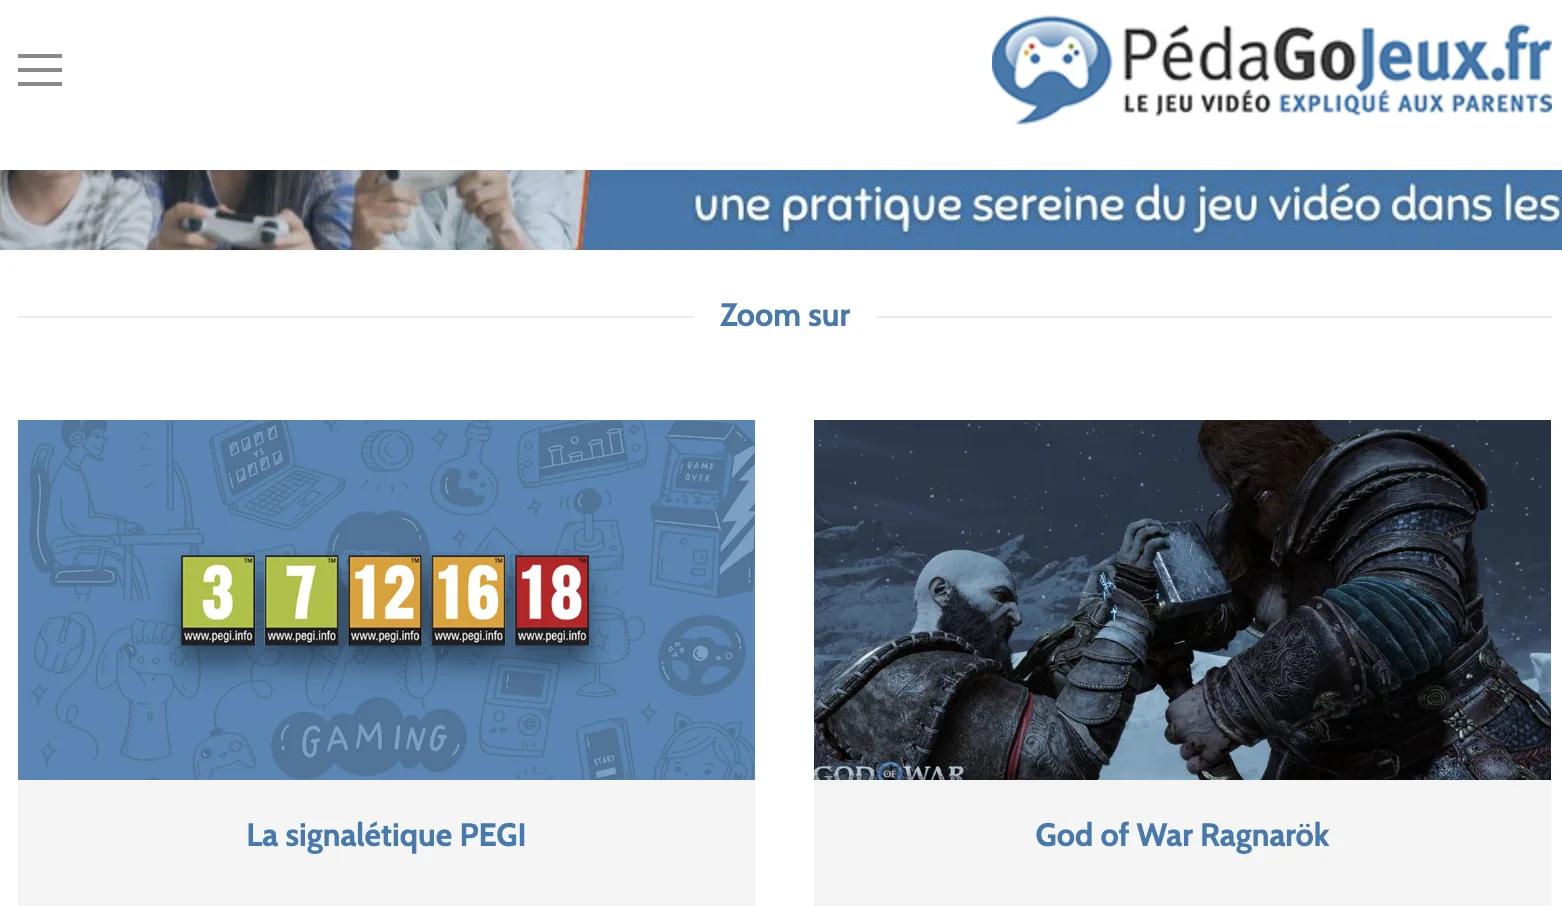 Site www.pedagojeux.fr